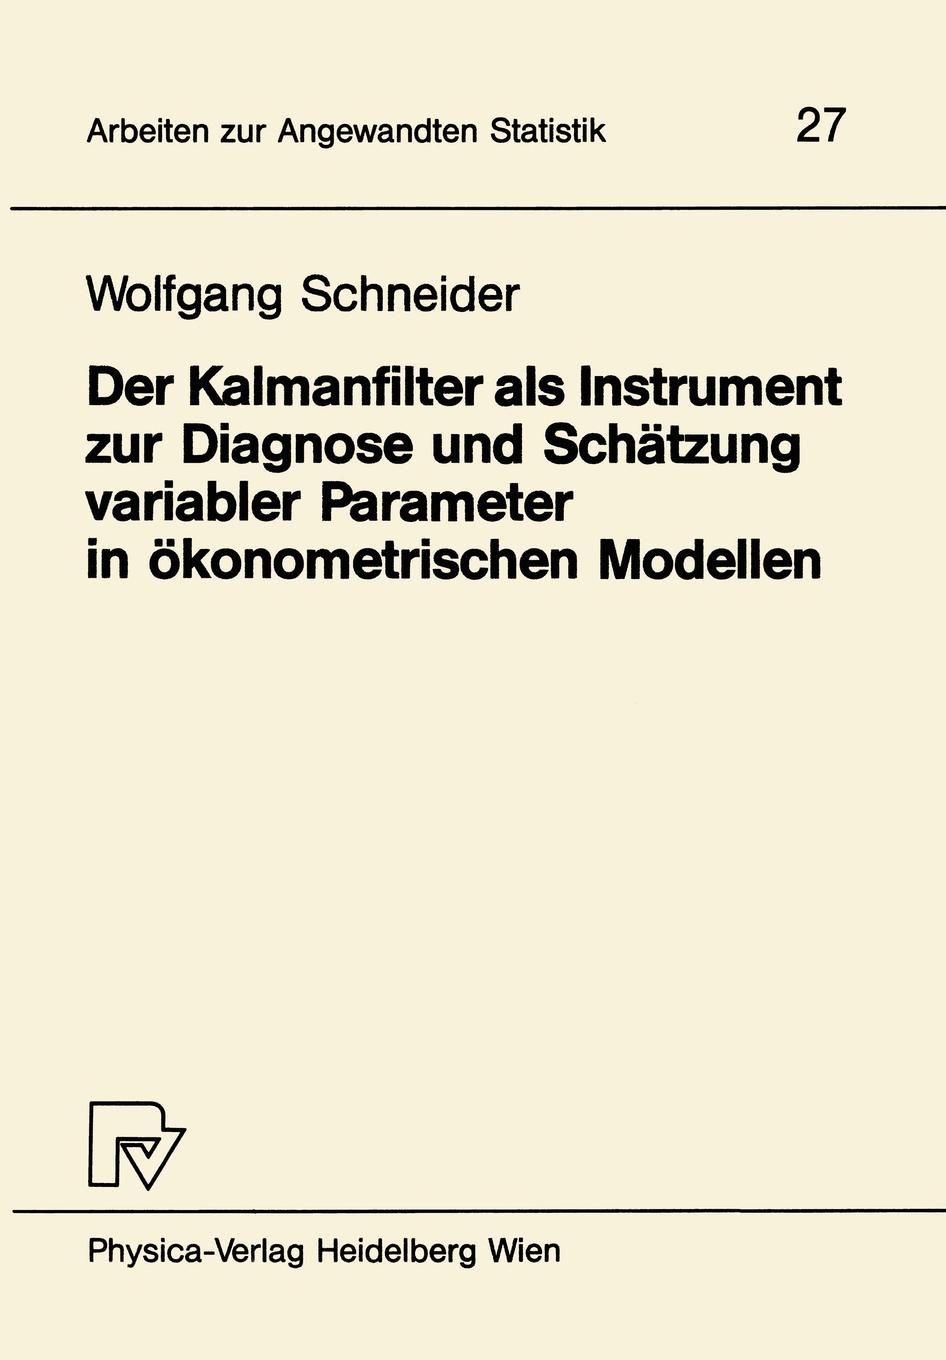 Der Kalmanfilter als Instrument zur Diagnose und Schatzung variabler Parameter in okonometrischen Modellen